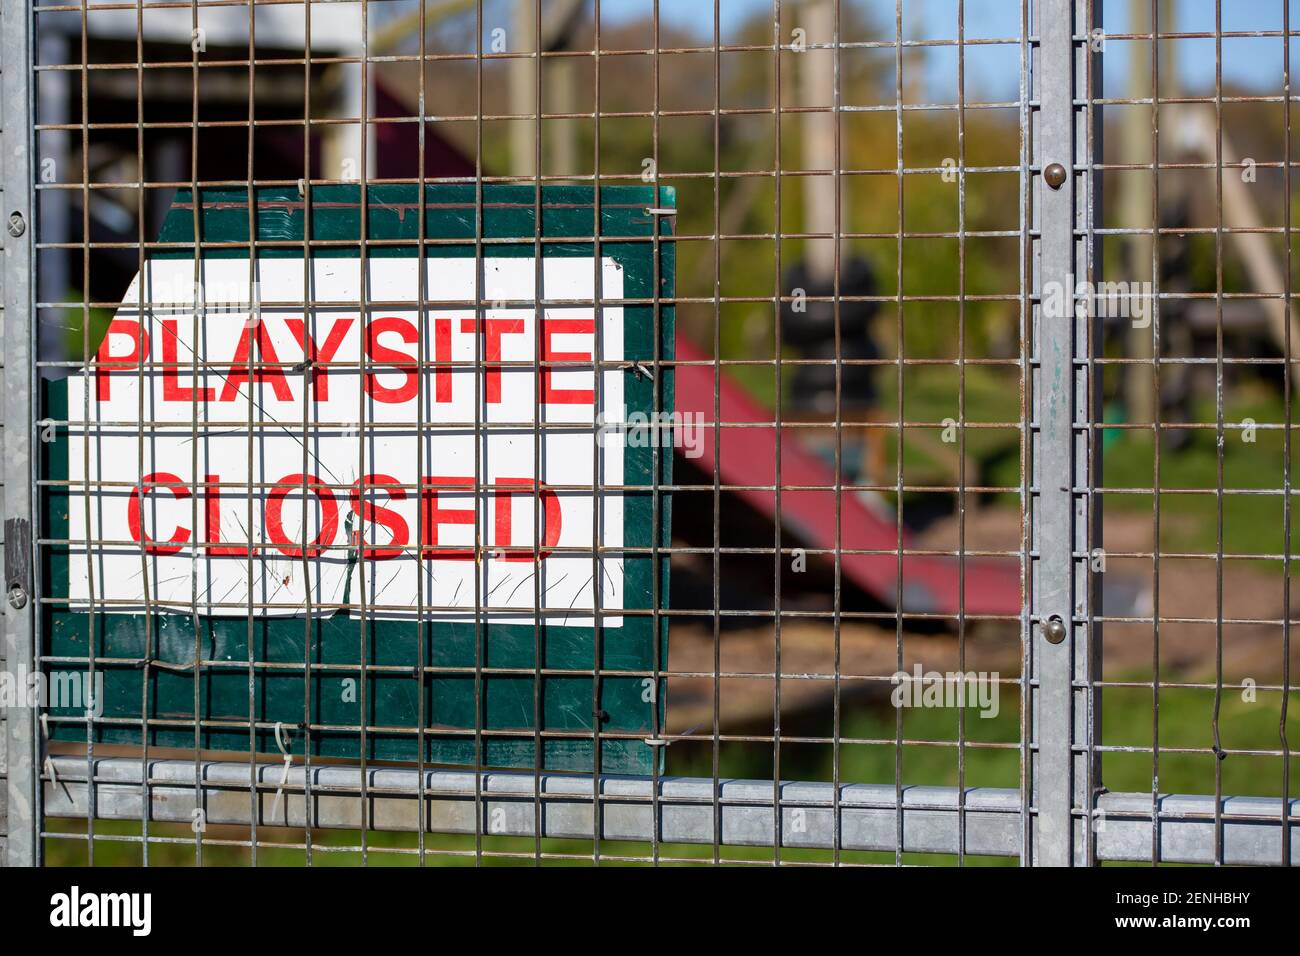 Ein Schild am Eingang zu einem Spielplatz, einem Spielzentrum oder Park, das besagt, dass der Park geschlossen ist Stockfoto